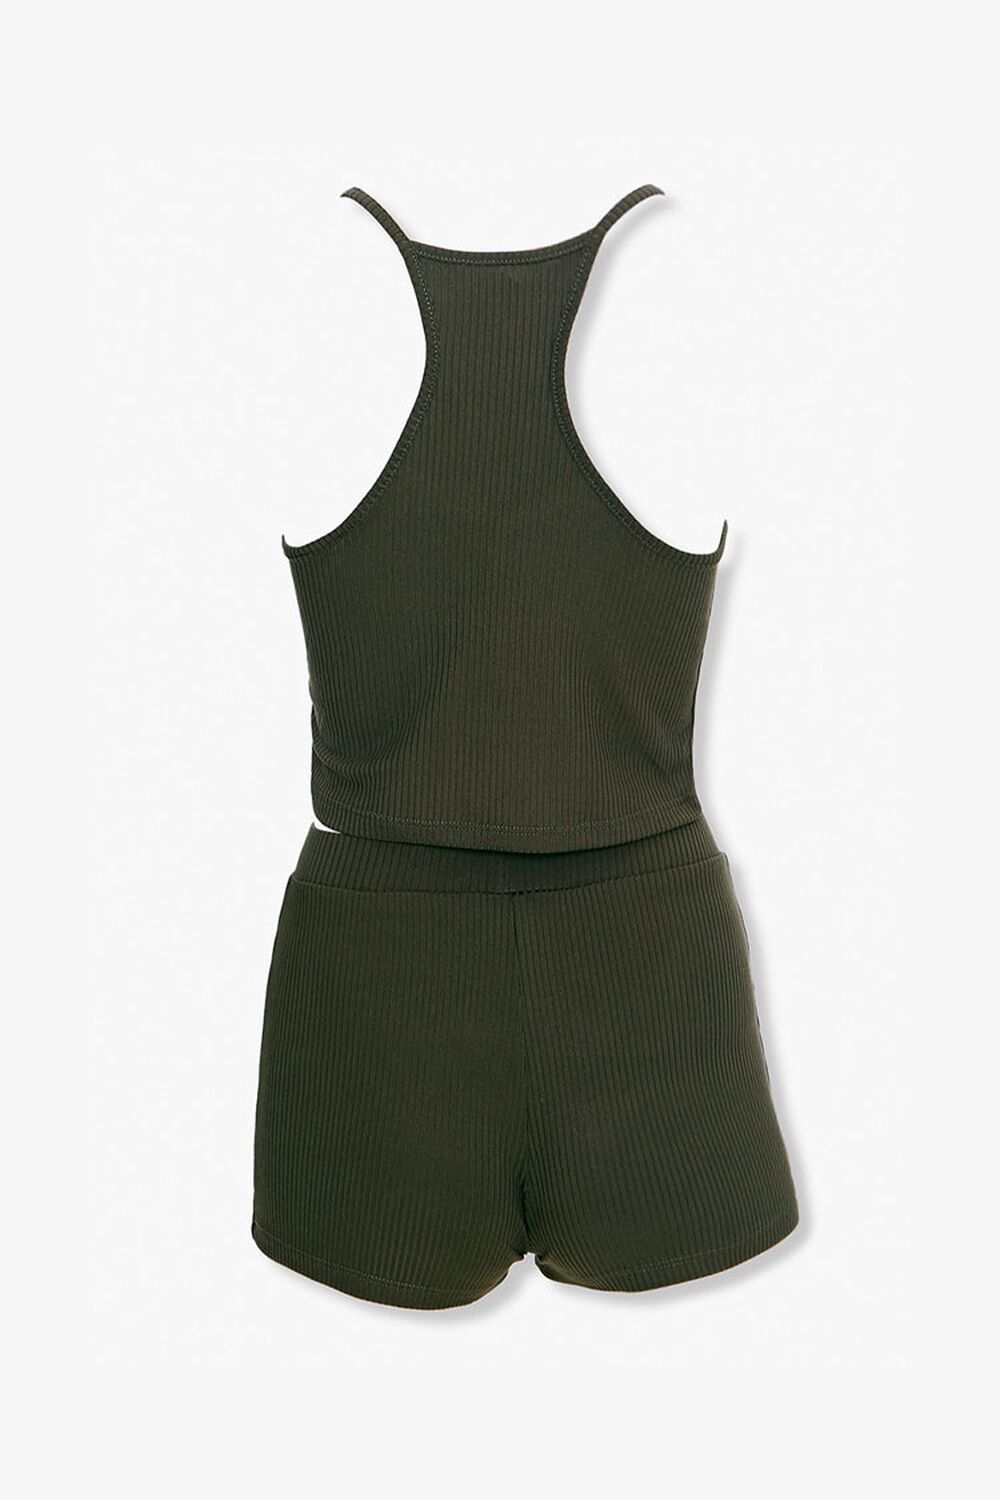 OLIVE Cropped Cami & Shorts Set, image 2